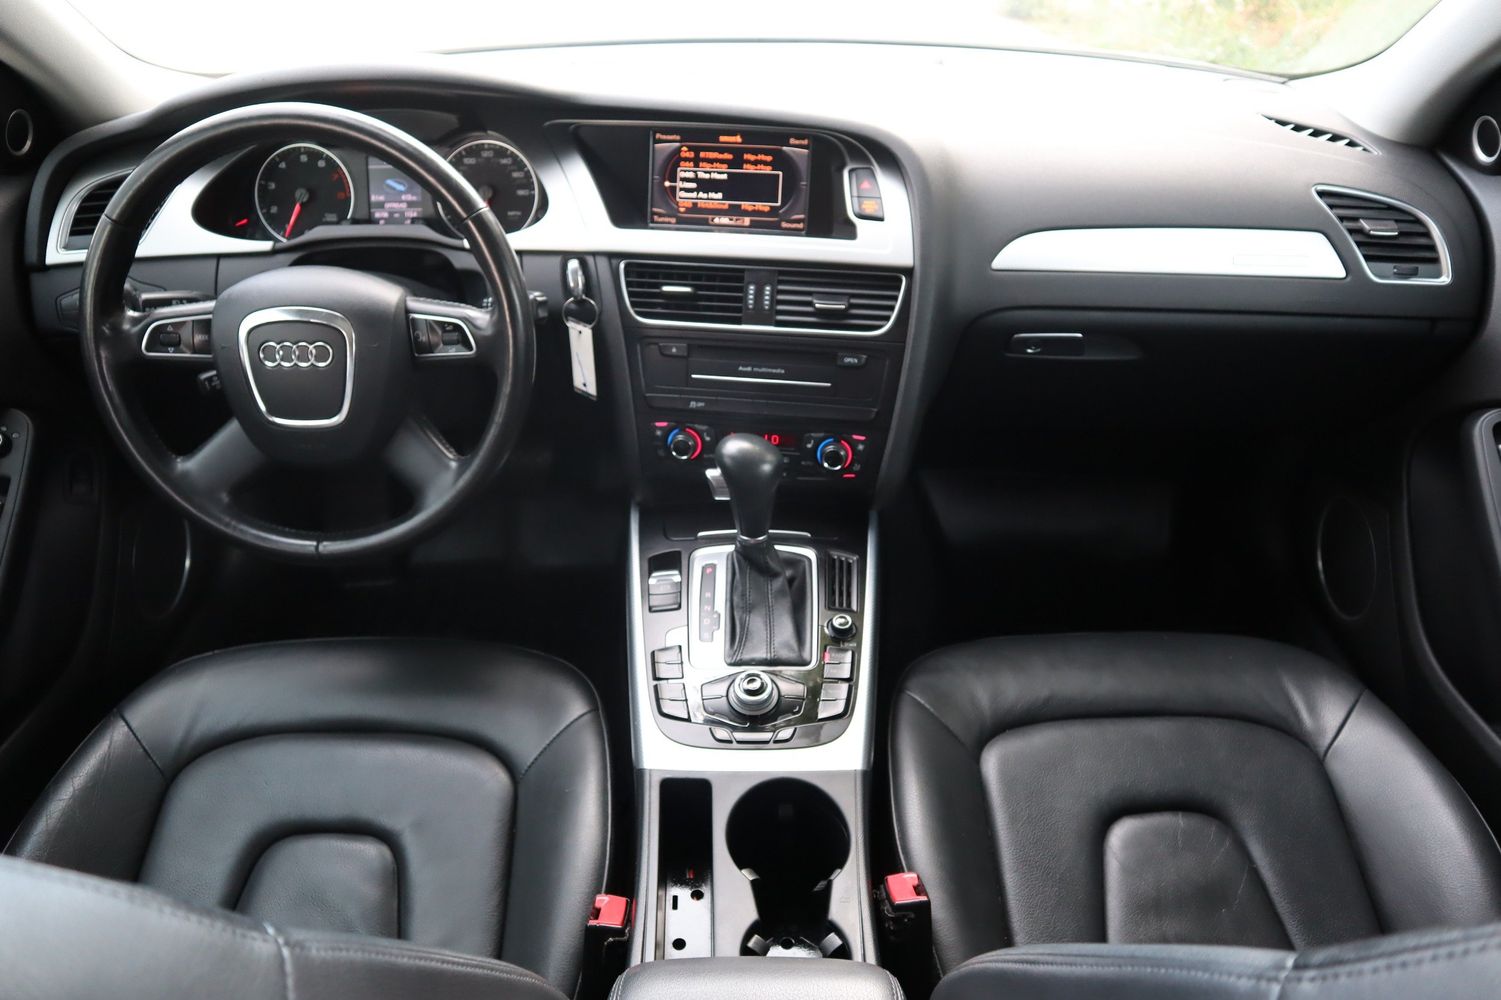 2011 Audi A4 2.0T quattro Avant Premium Plus | Victory Motors of Colorado